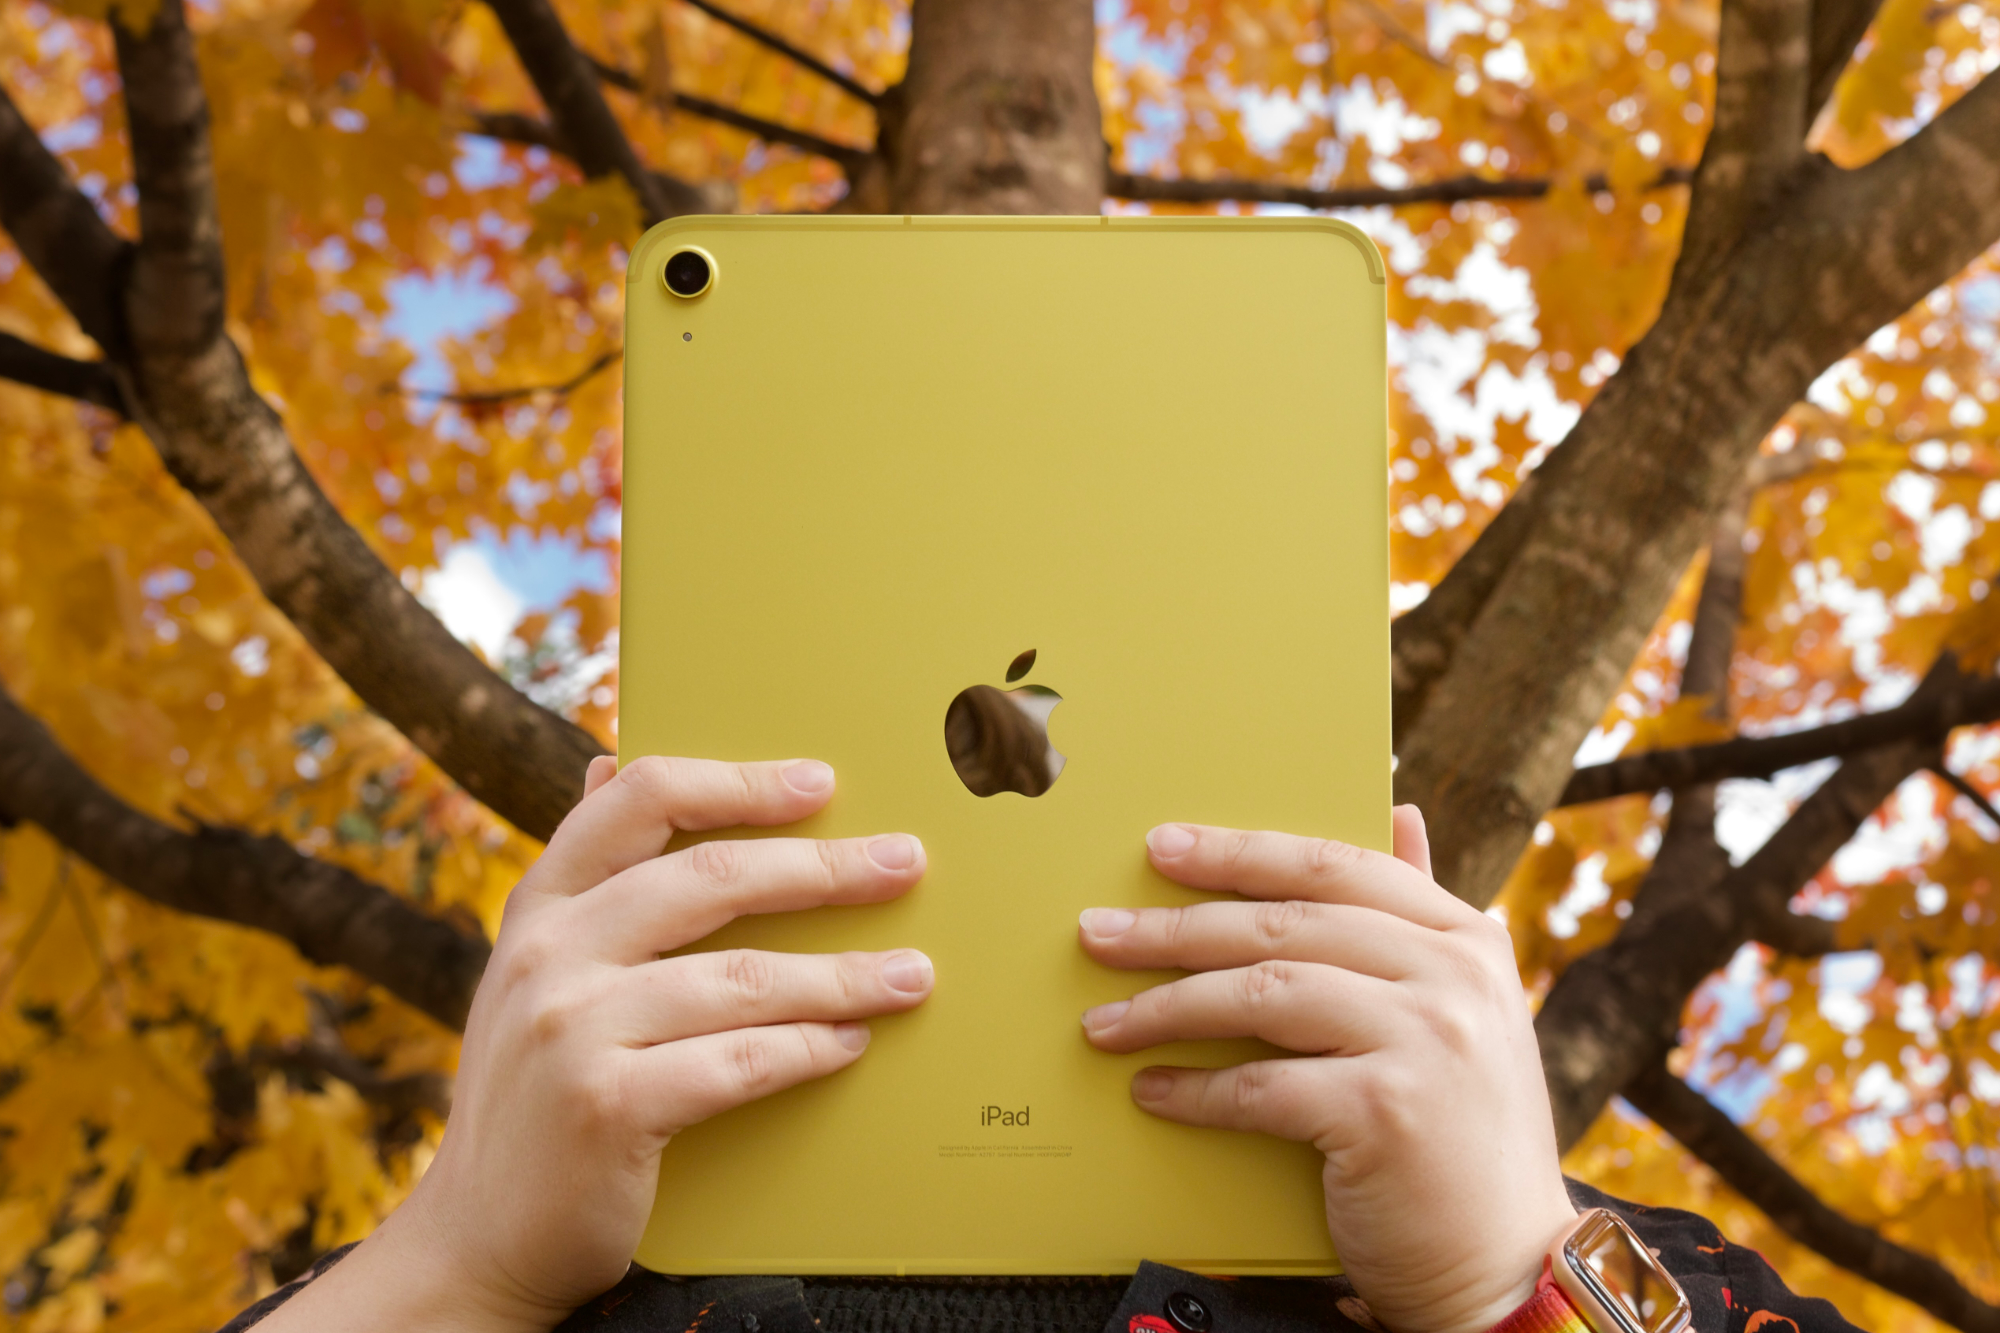 Qualcuno tiene in mano l'iPad giallo (2022) di fronte a degli alberi con foglie arancioni e gialle.